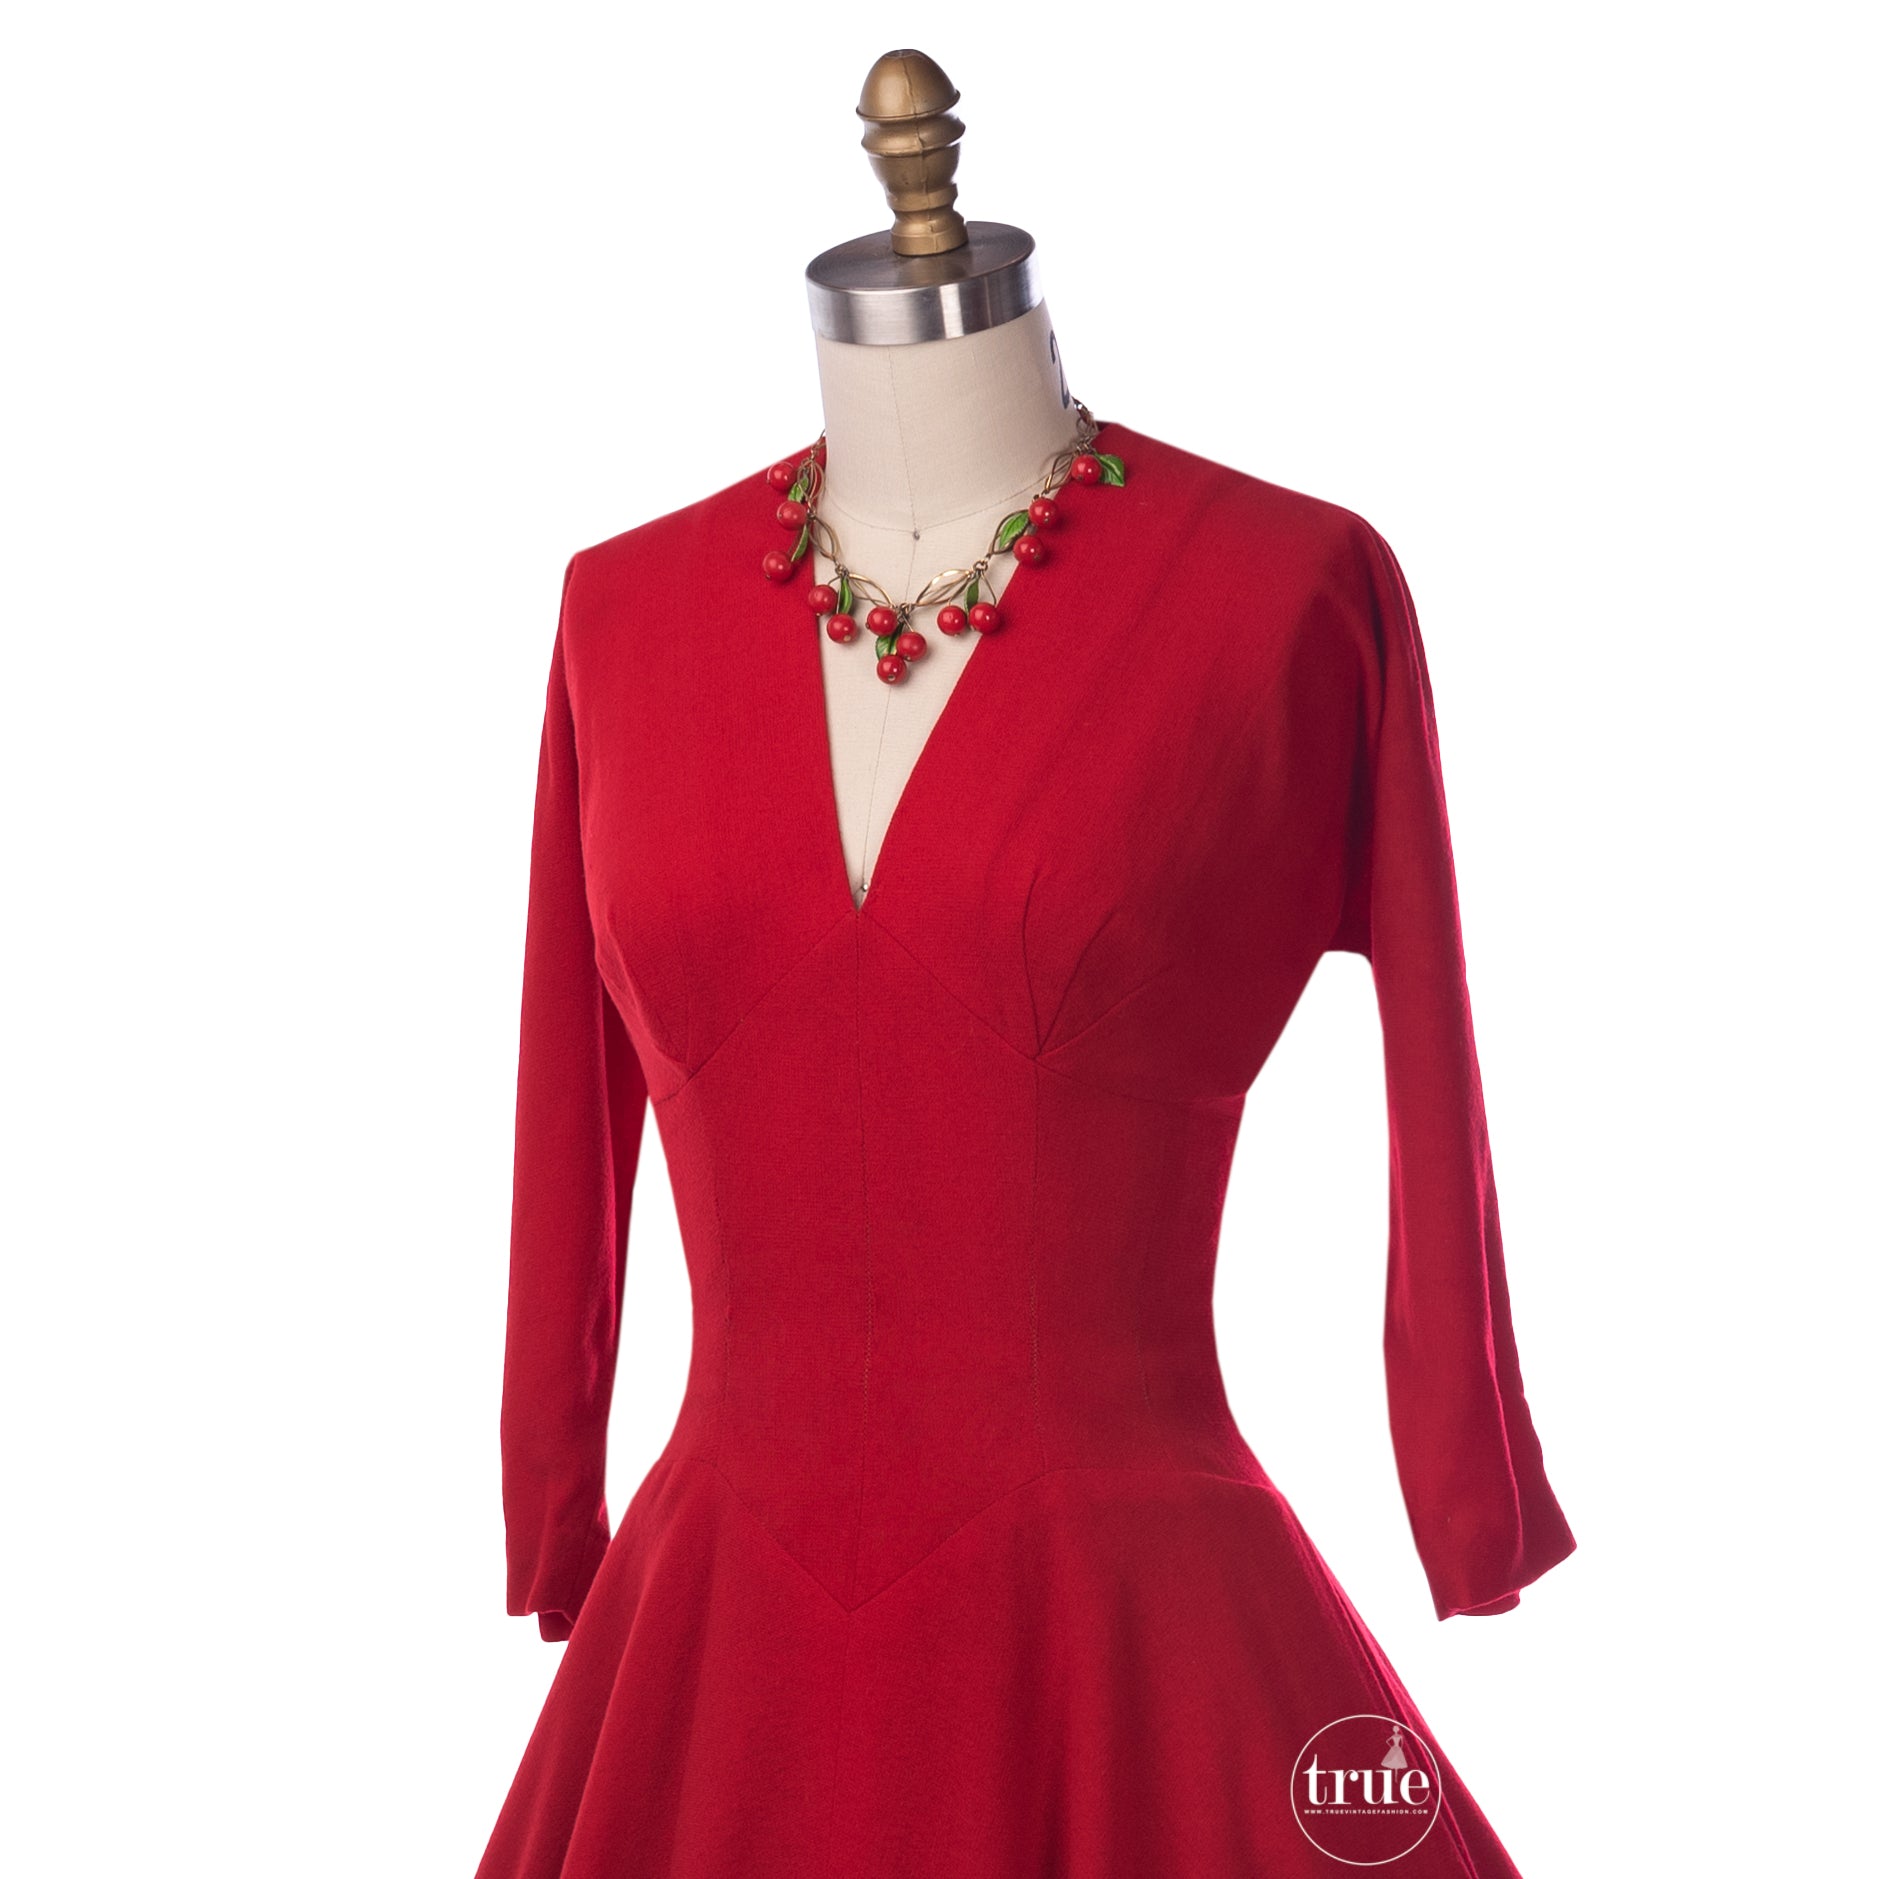 vintage red dress